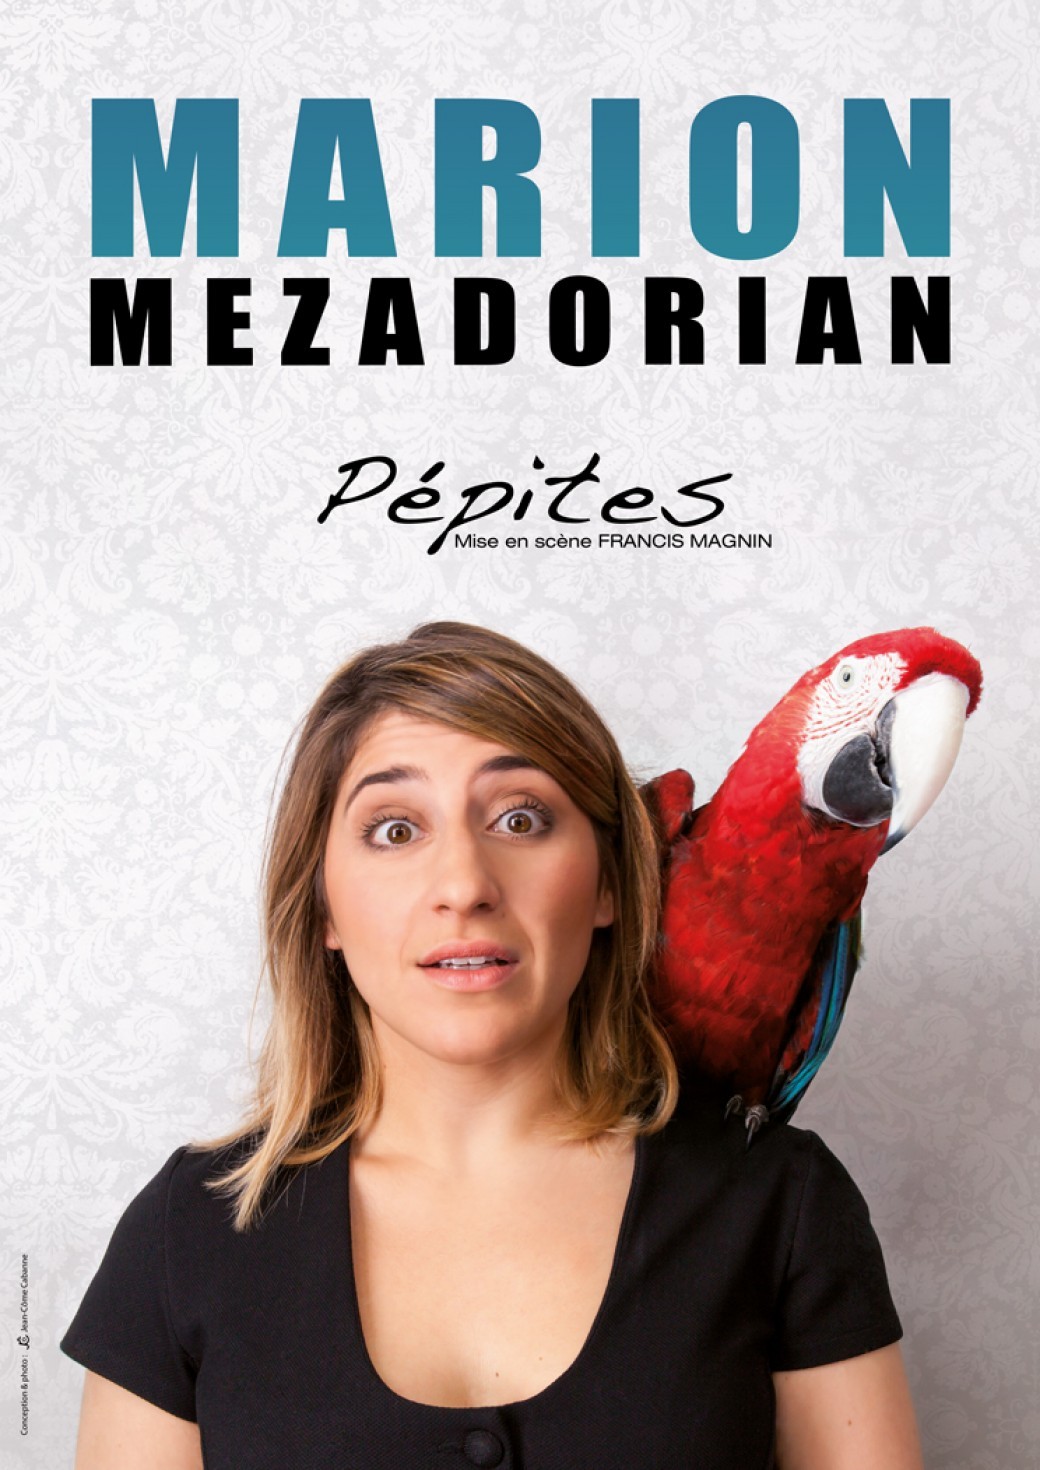 Marion Mezadorian dans "Pepites"